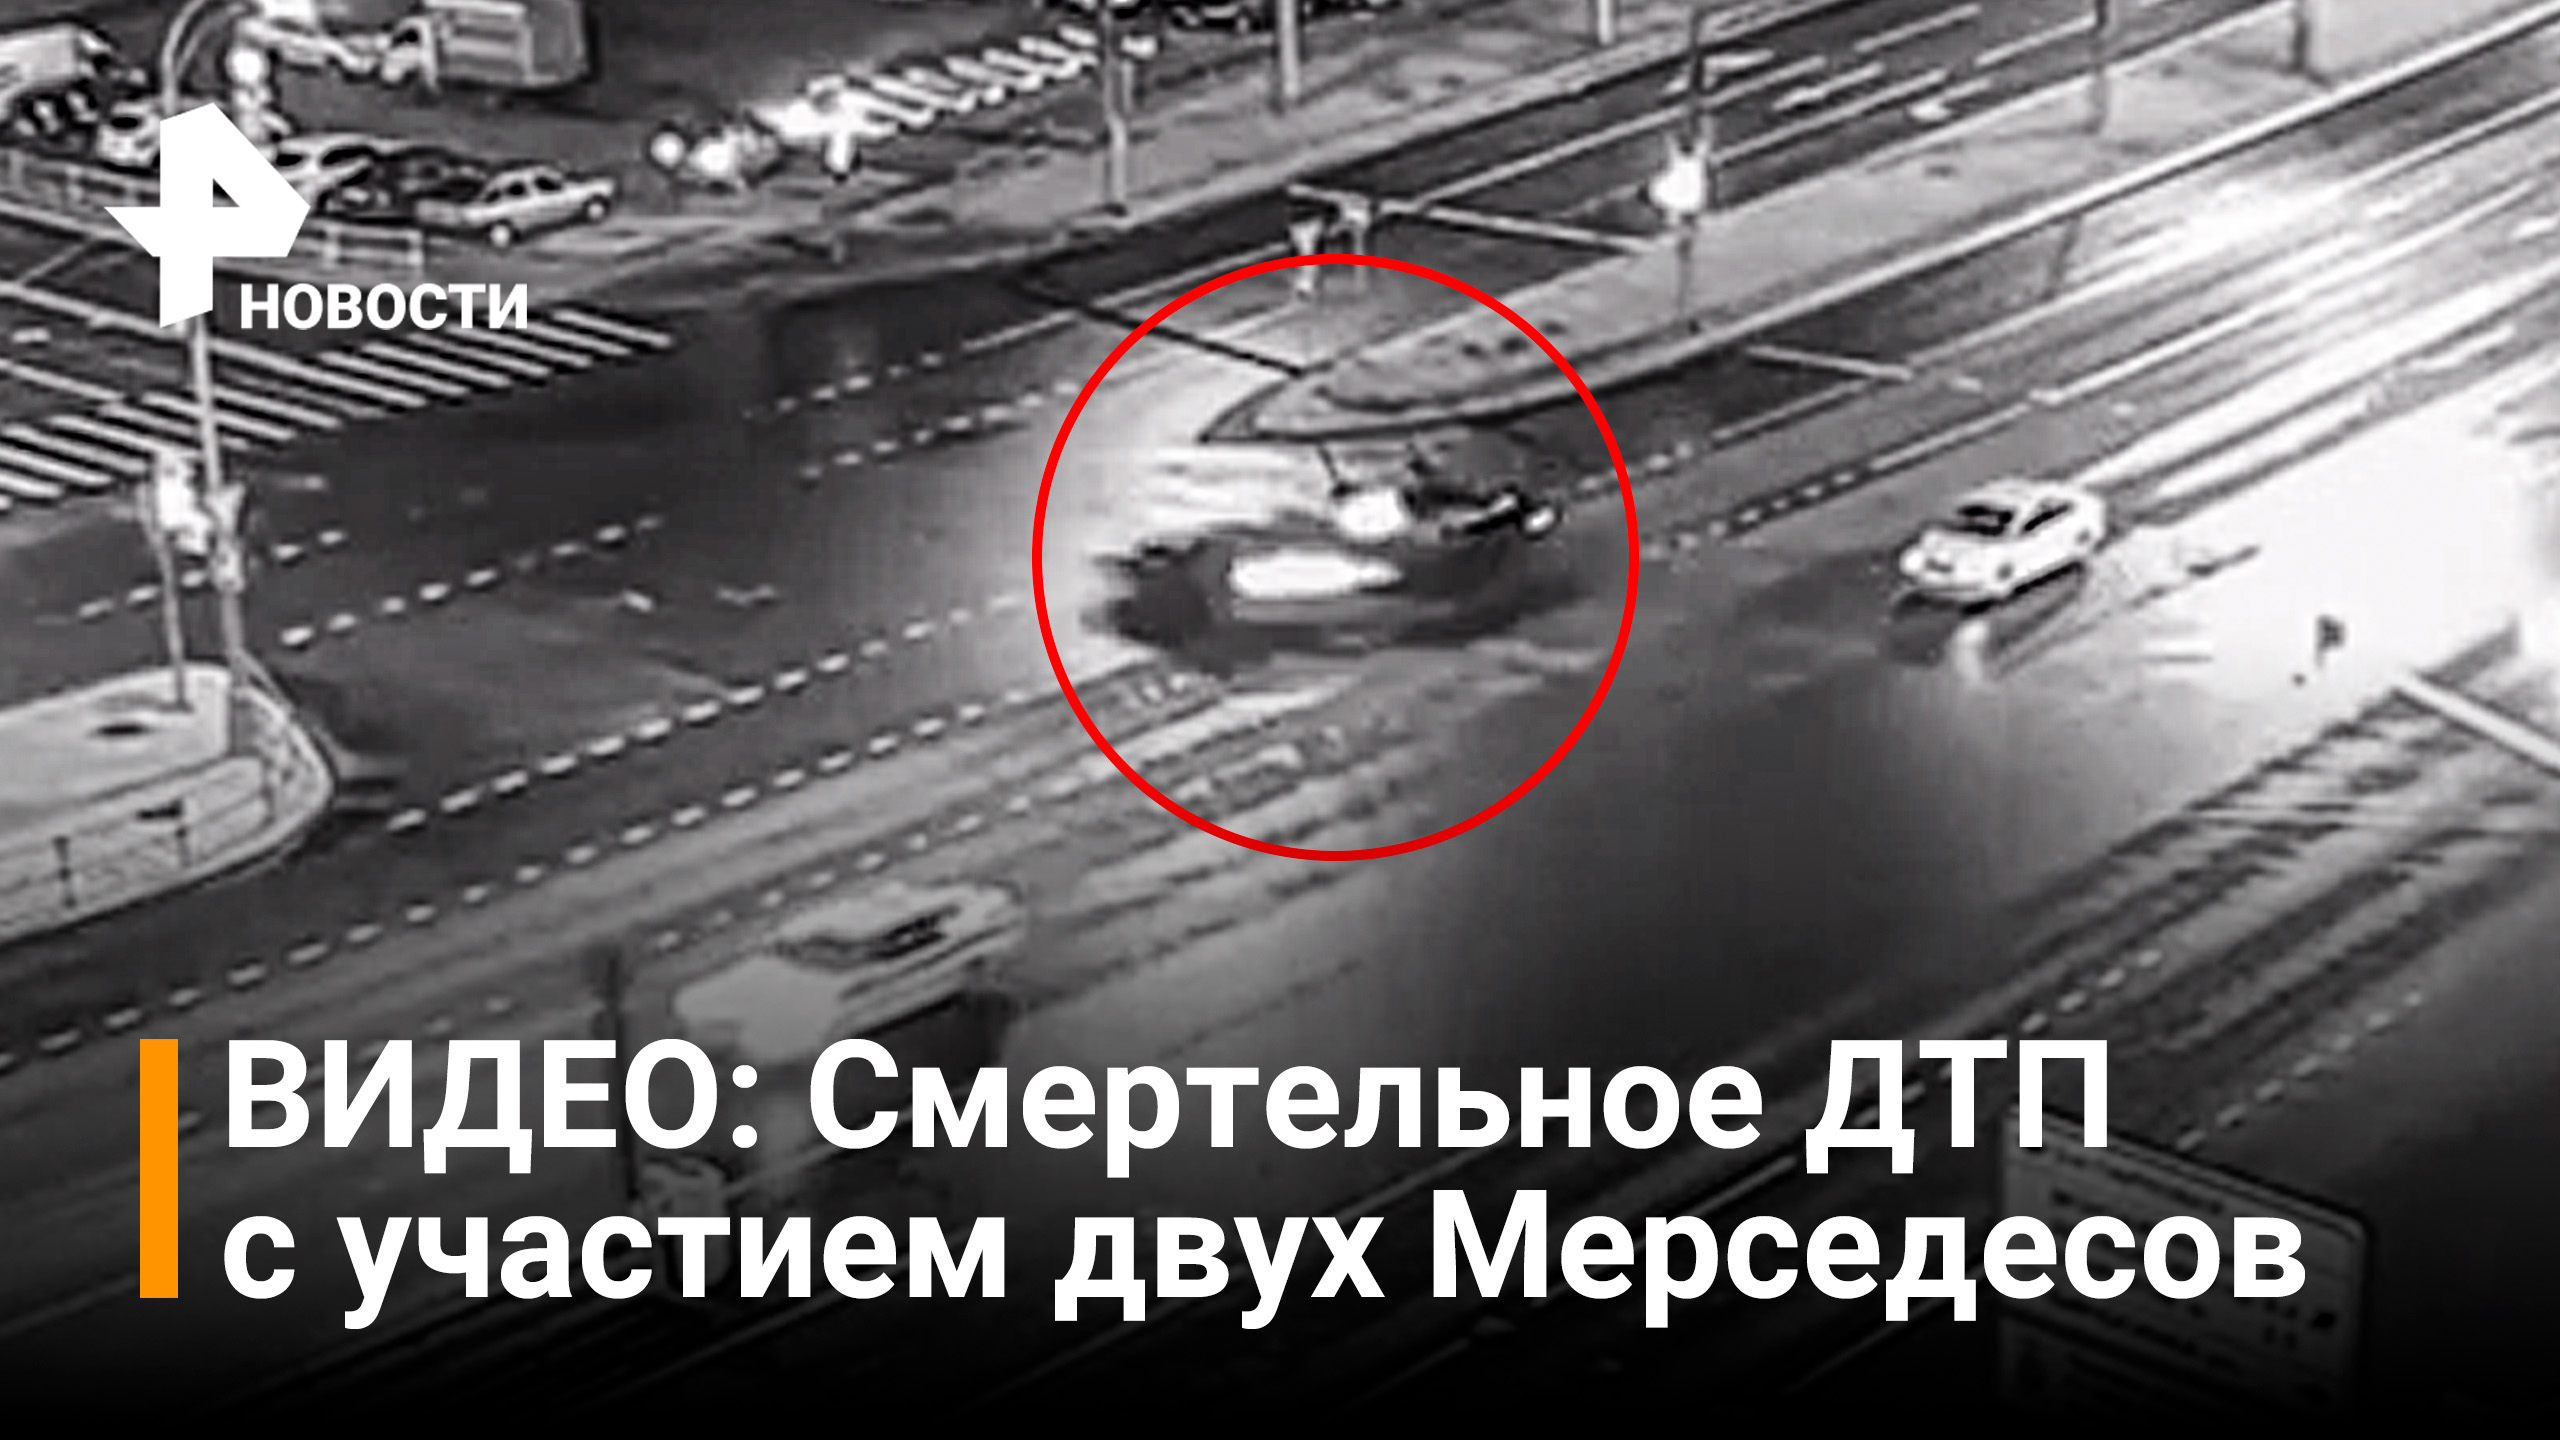 Один человек погиб в ночном ДТП с участием двух Мерседесов в Москве / РЕН Новости